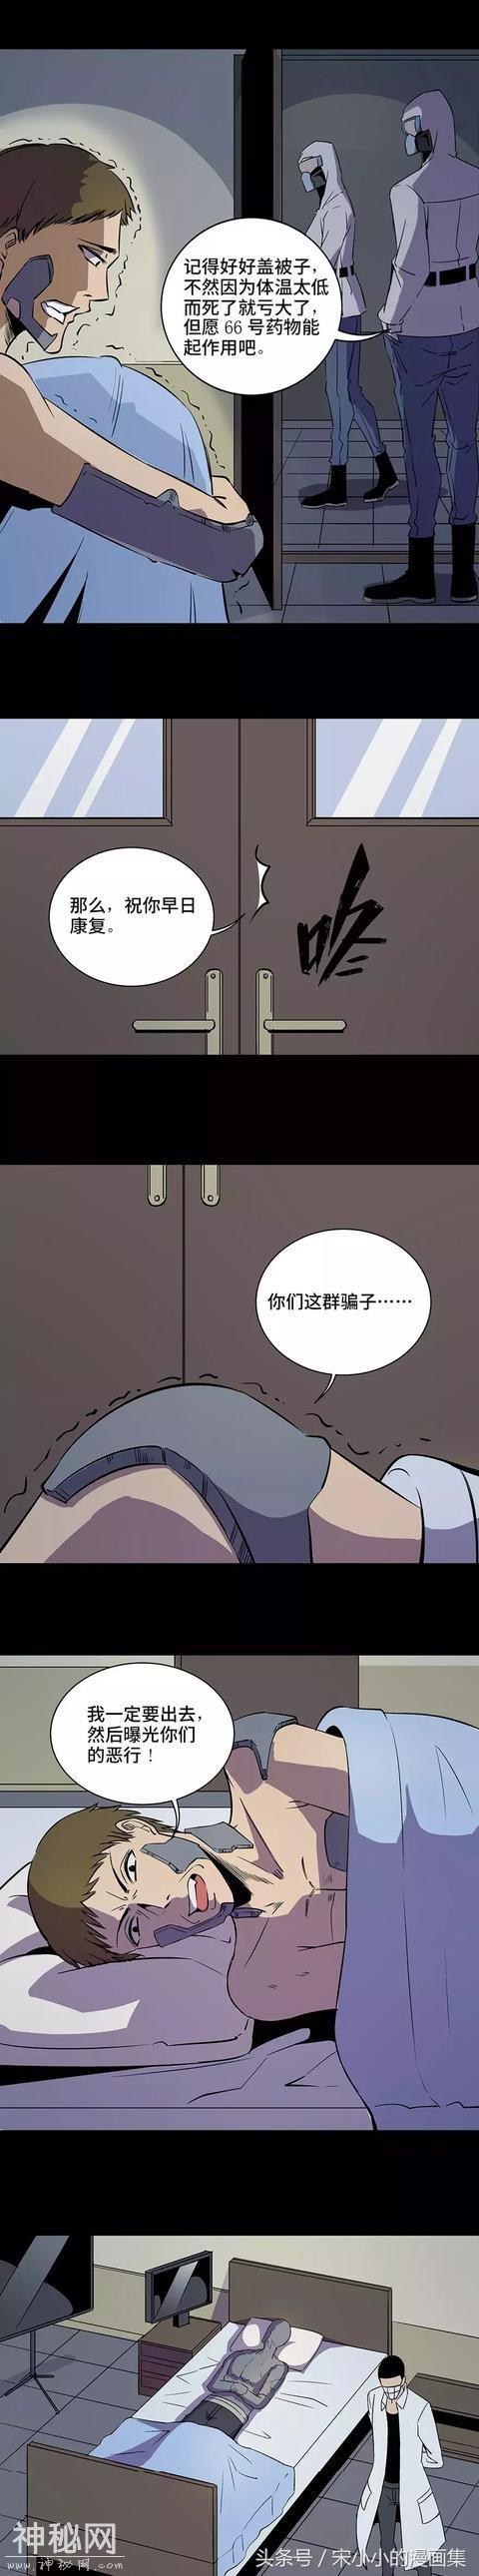 精品漫画《让人变成石头的怪病》-4.jpg